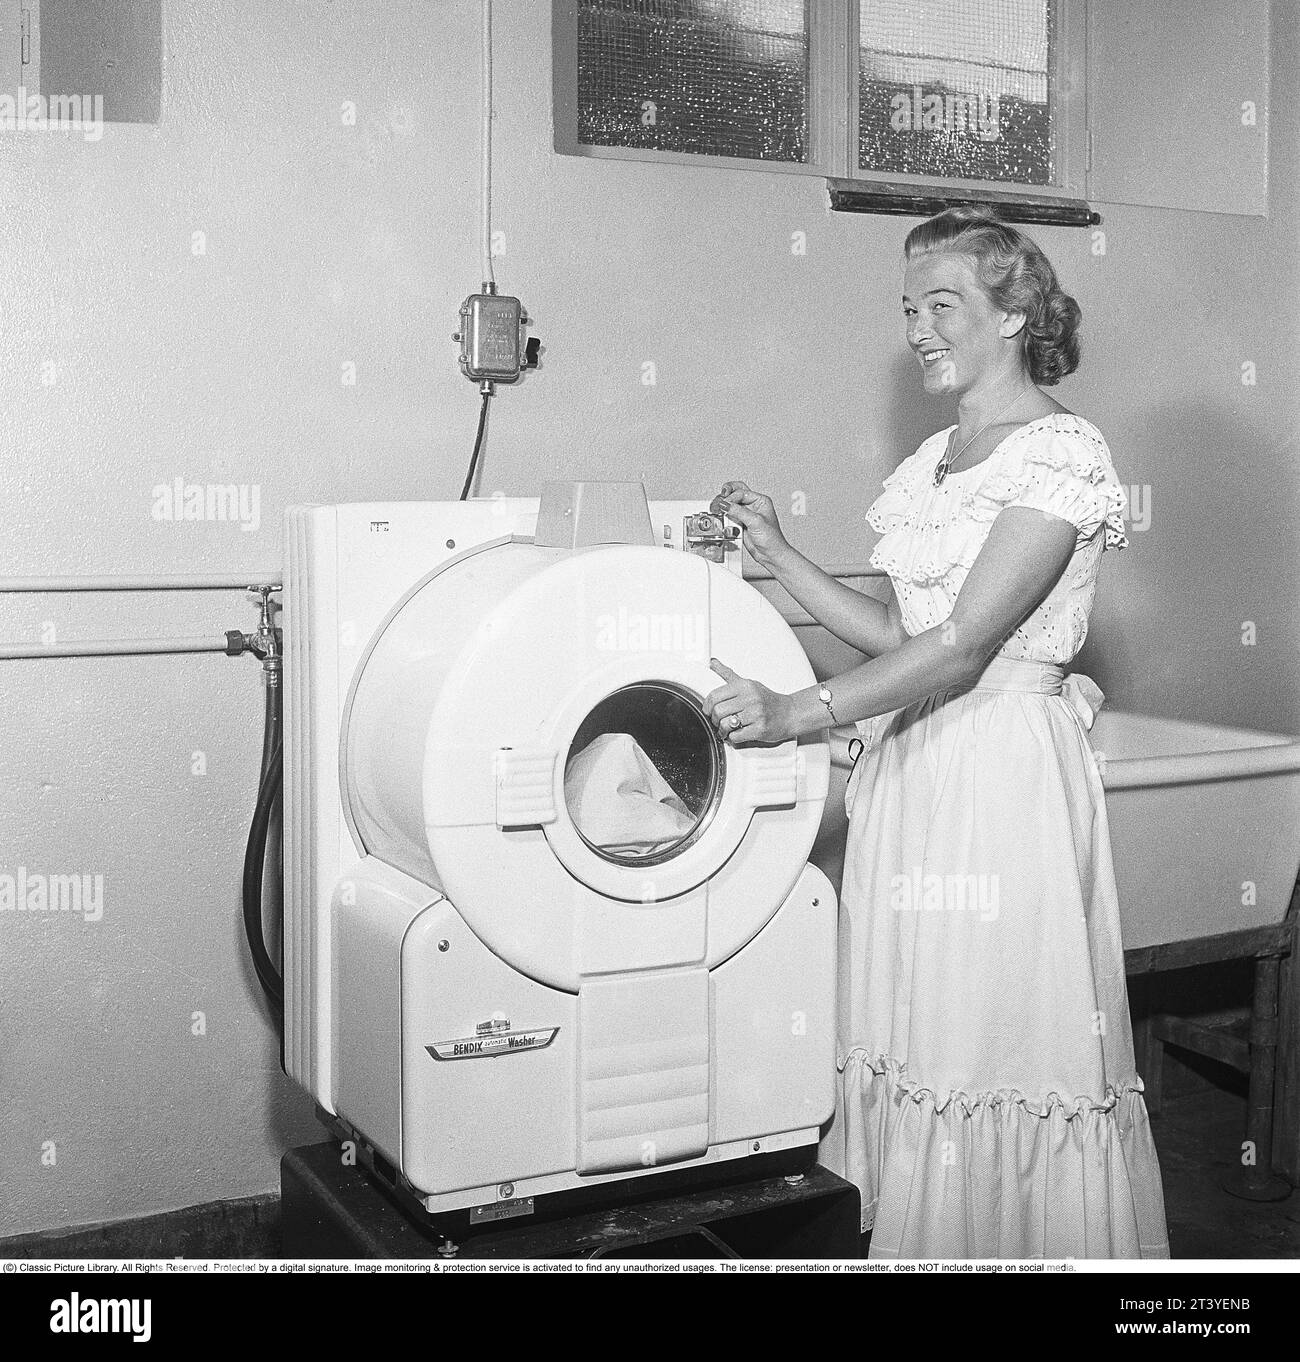 Dans les années 1950 Une jeune femme dans une machine à laver américaine ultramoderne du fabricant Bendix. Le modèle était la première machine à laver automatique et n'était pas différent des machines à laver d'aujourd'hui. Suède 1950. Kristoffersson réf AZ78-7 Banque D'Images